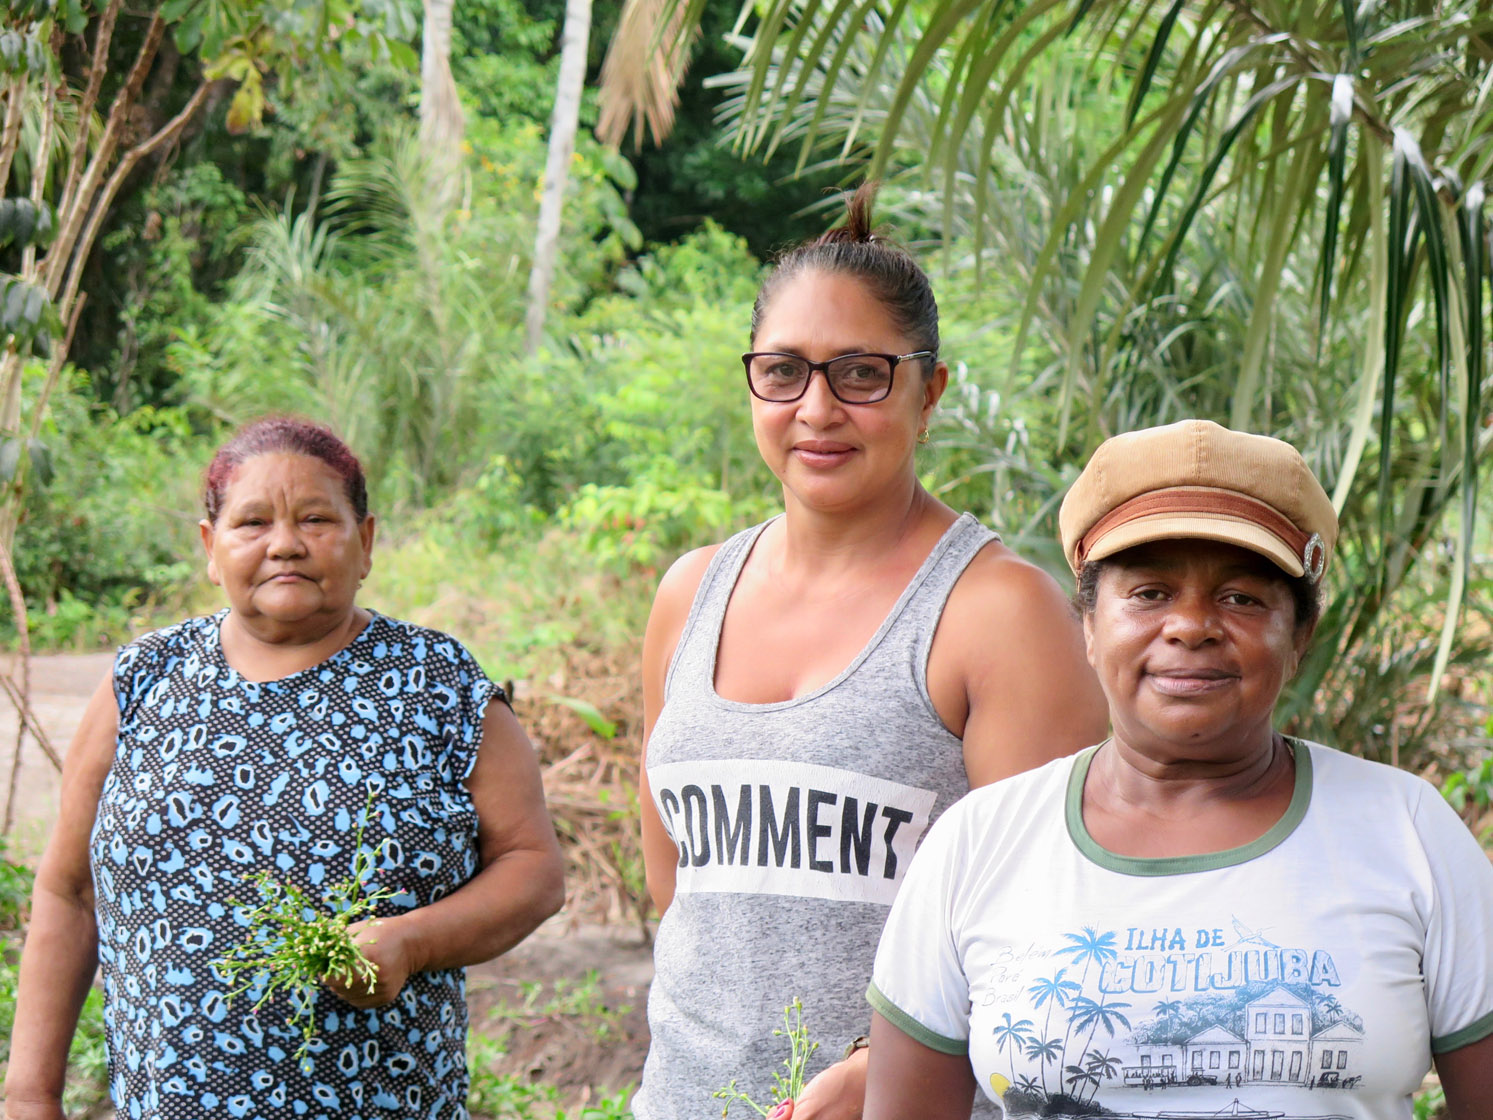 Mulheres transformam sonho em renda na ilha de Cotijuba, no Pará